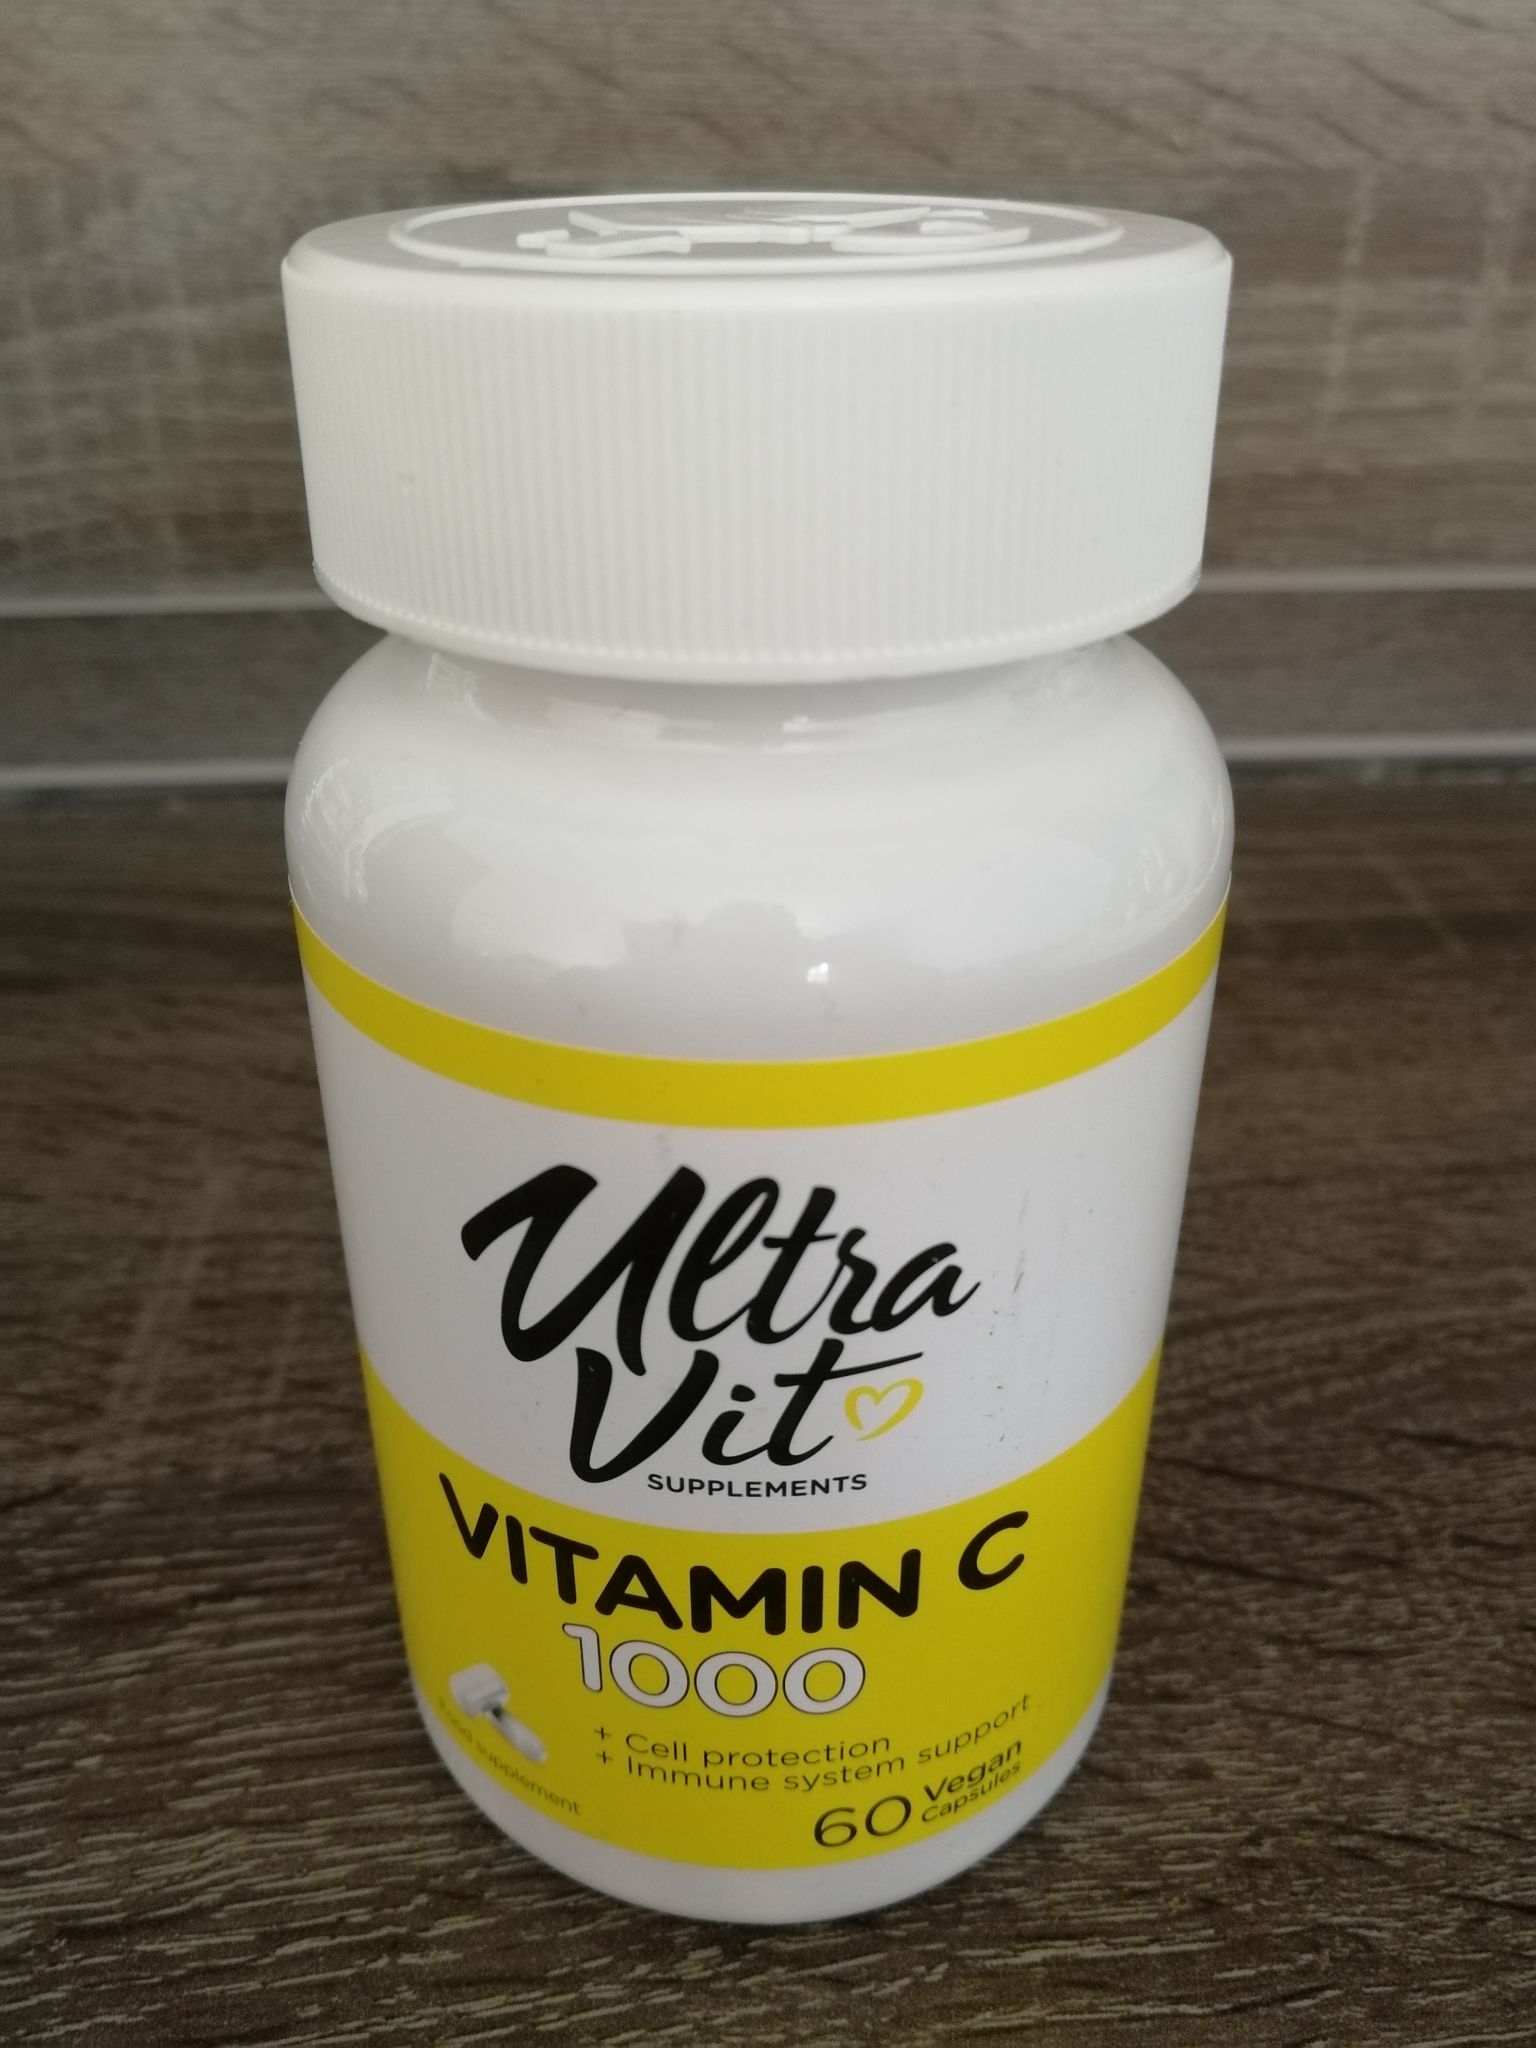 Ultra vitamin. Ultra Vit Vitamin c 1000. Витамин d 2000 Ultravit. Витамины и минералы VP Laboratory Ultravit / Ultravit Vitamin d3 /120 Softgels. Ultra Vit Vitamin c 100.